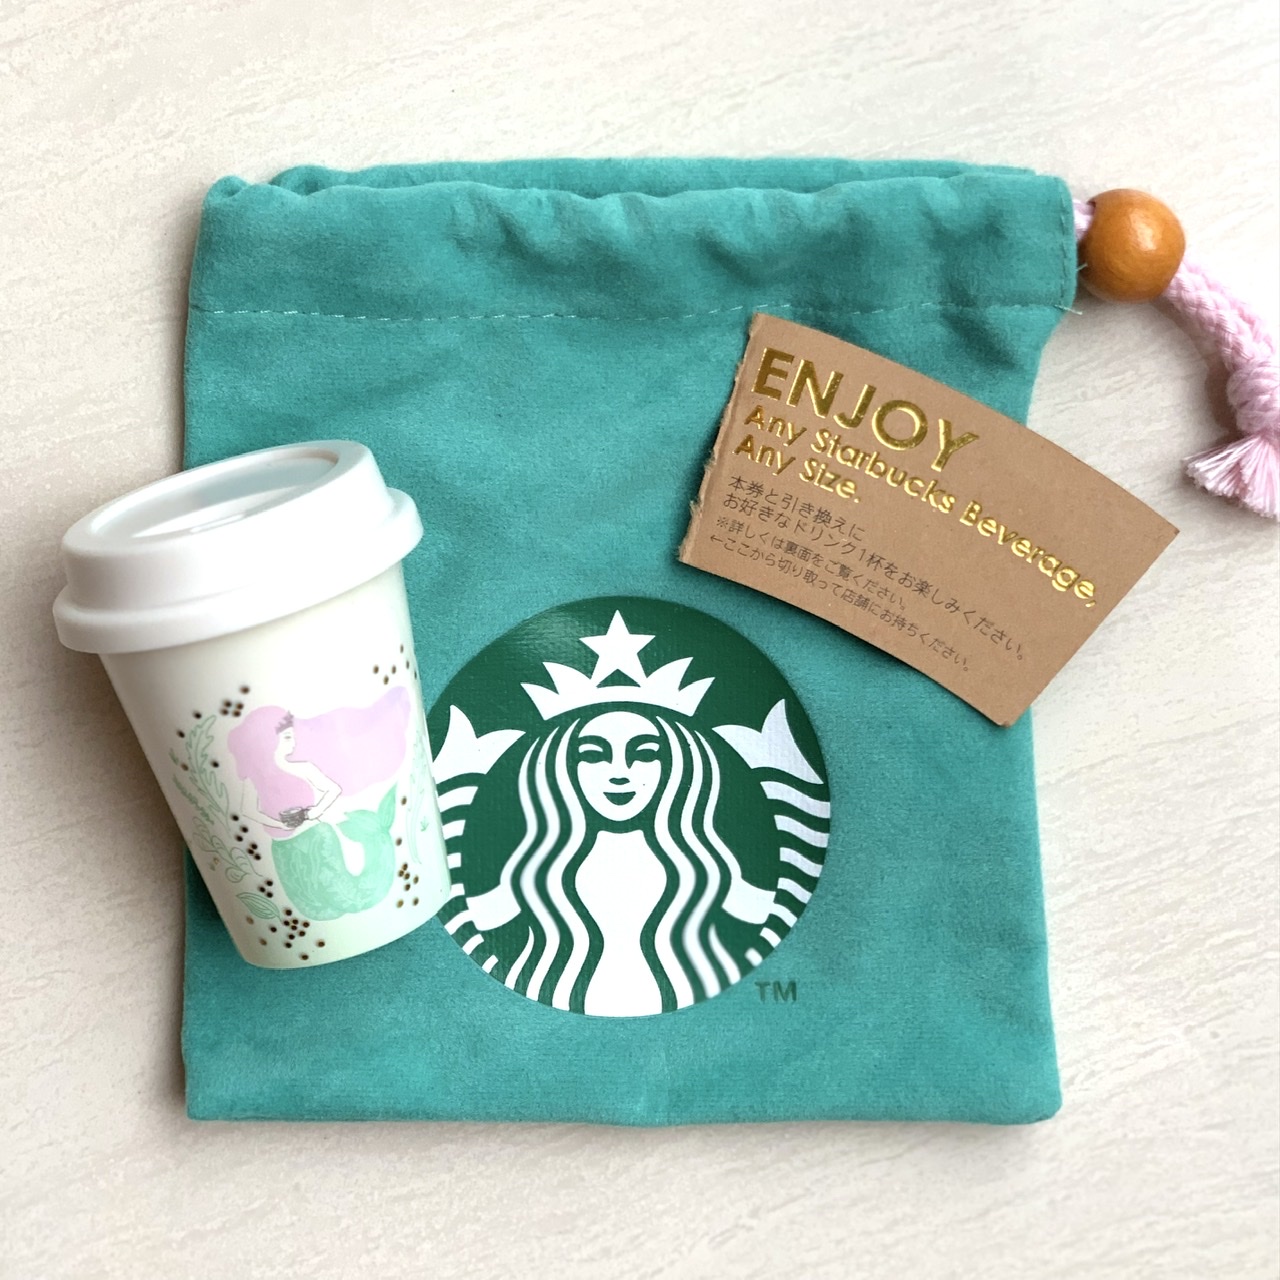 Starbucks スターバックス 巾着袋 ポーチ ミニカップ付属品 - 小物